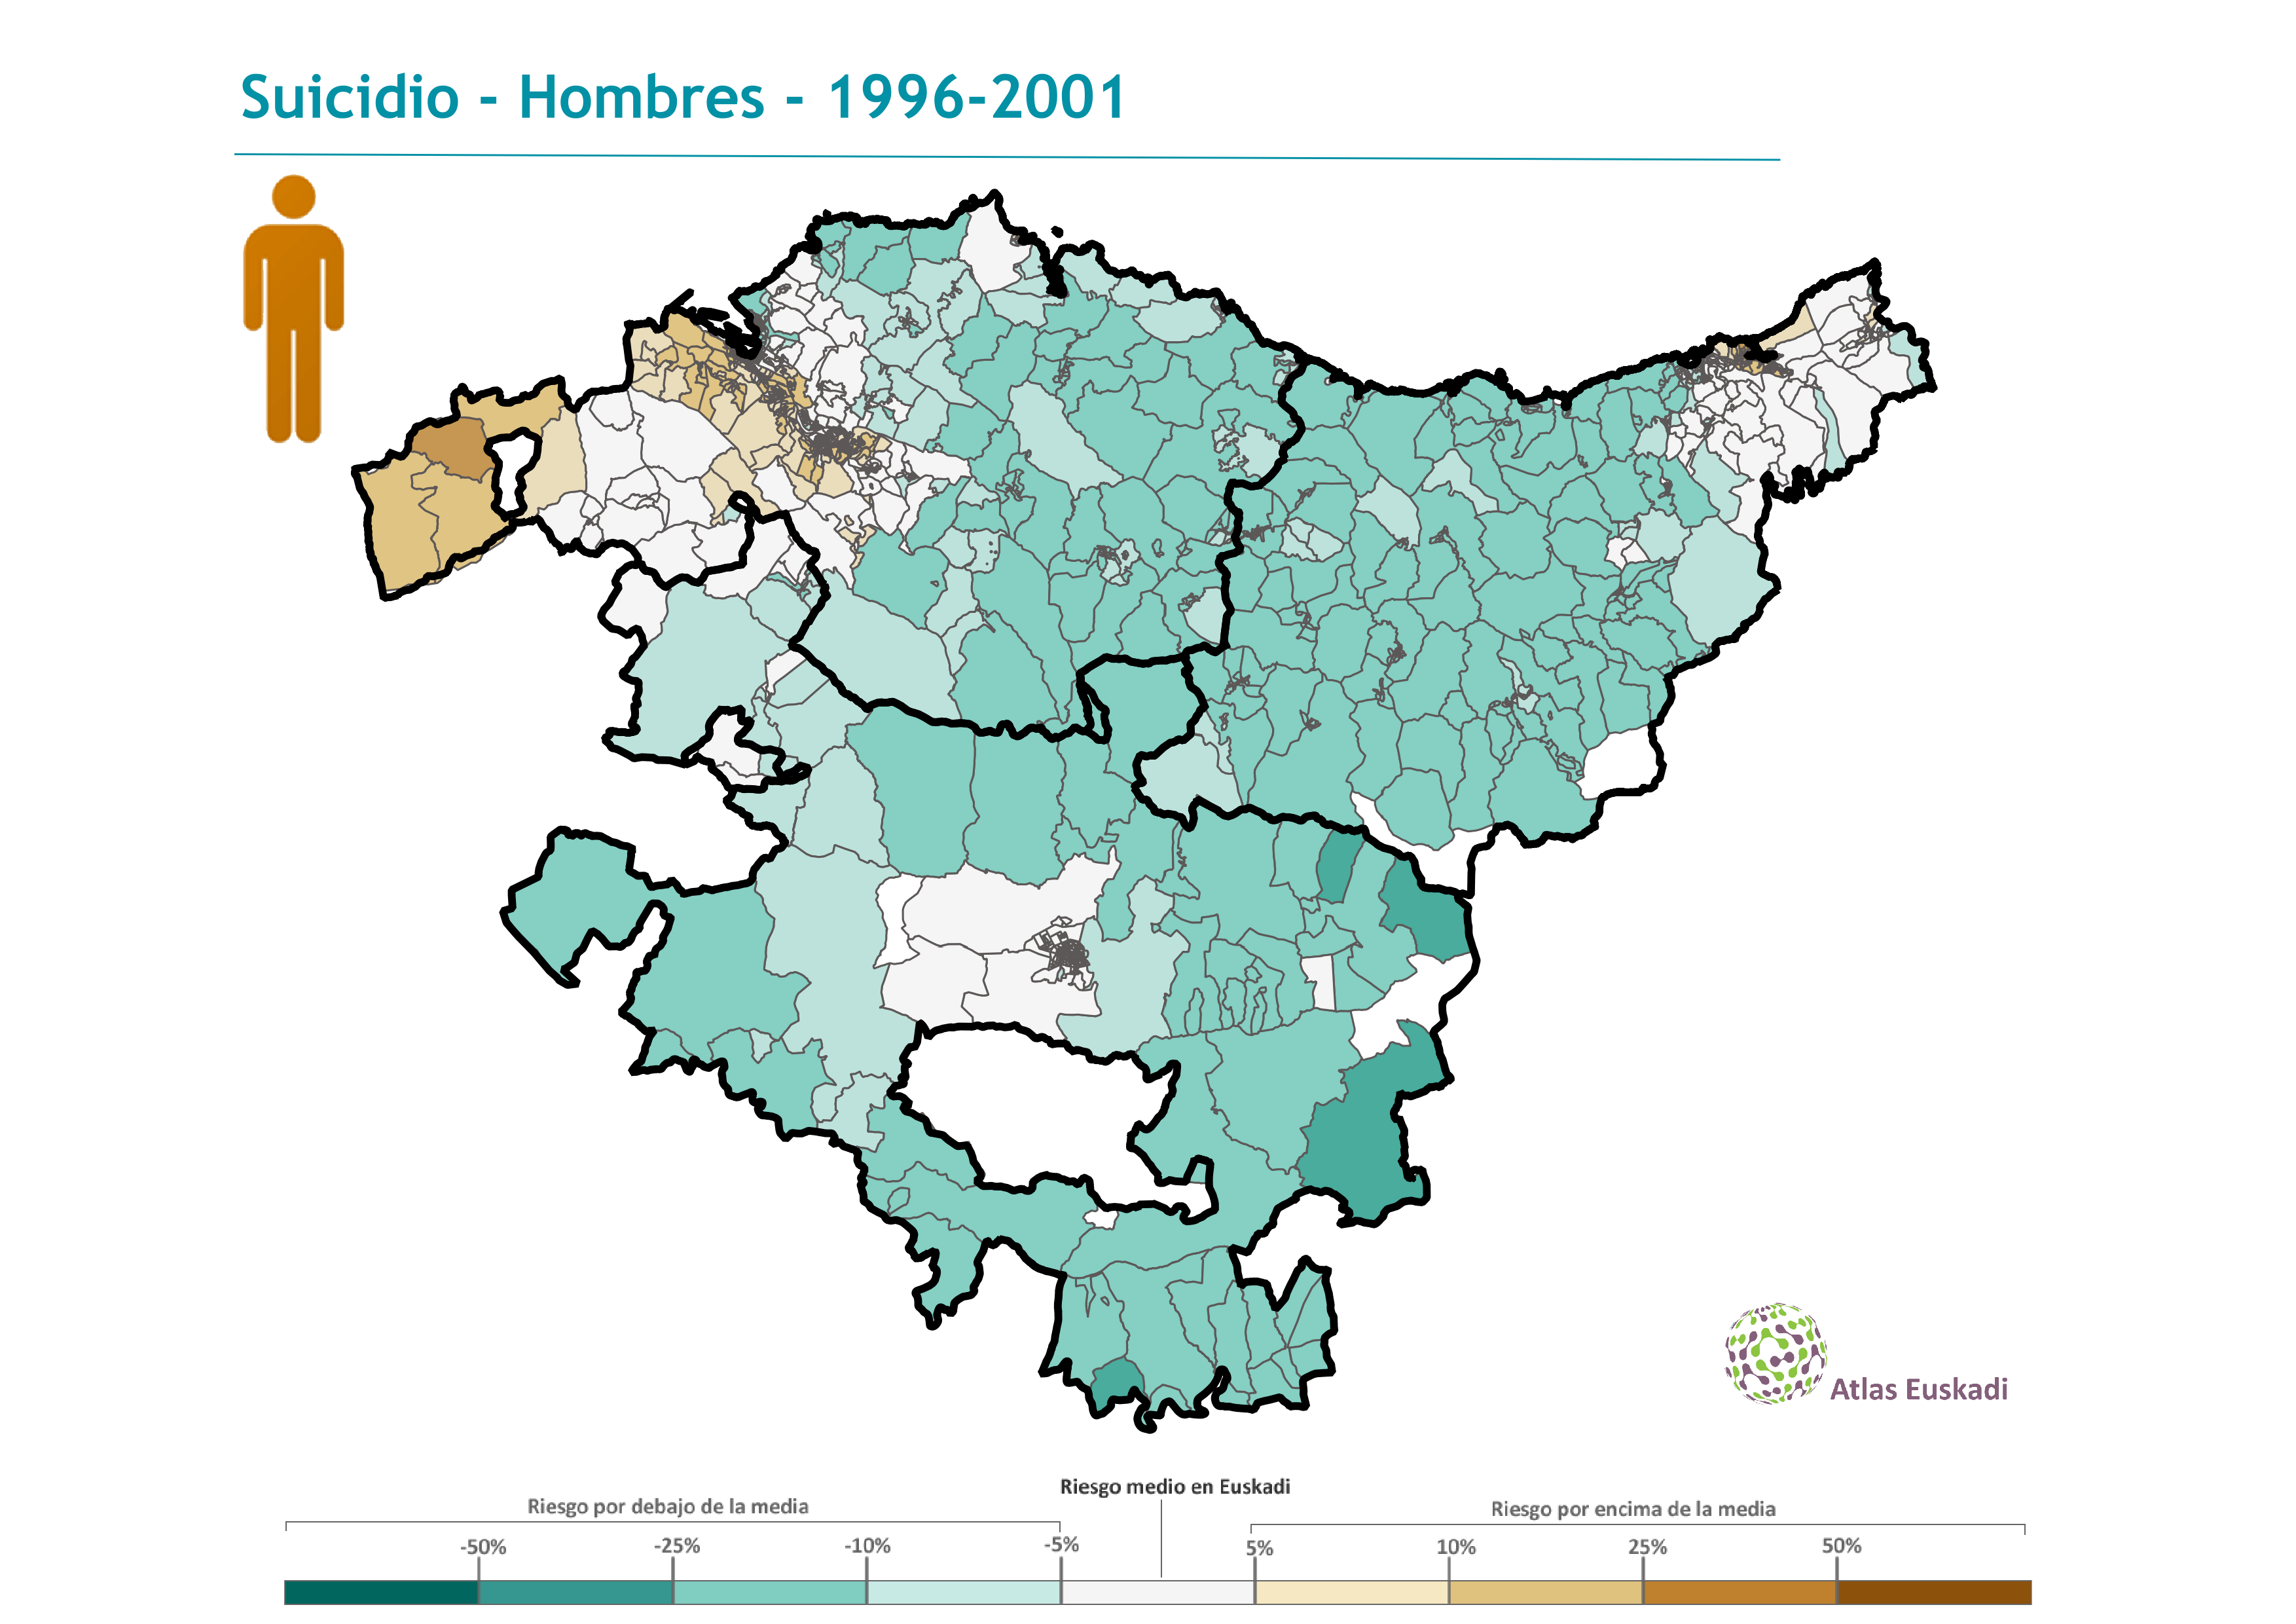 Tumores malignos hombres  1996-2001 Euskadi